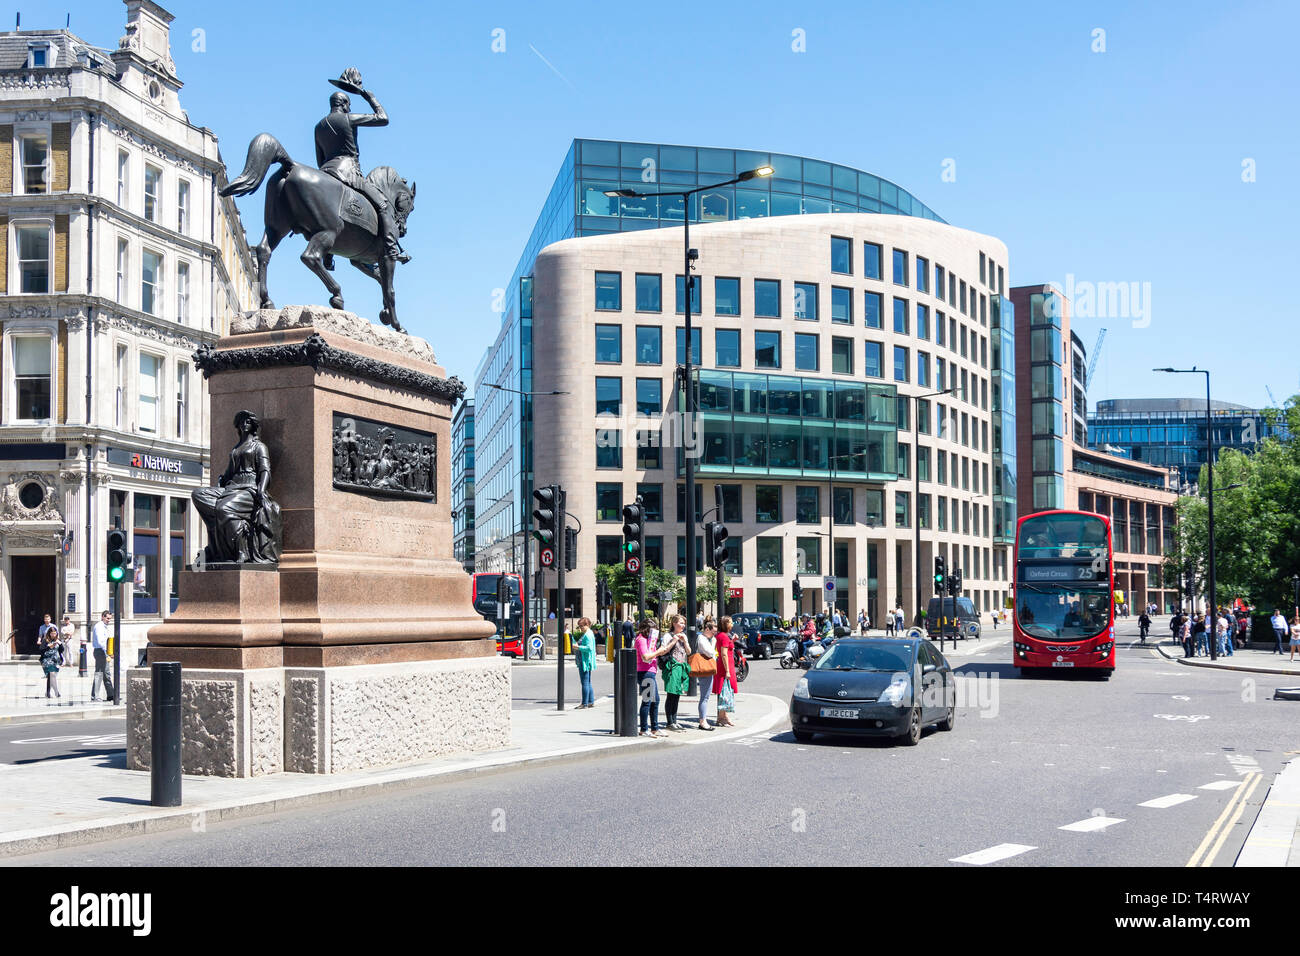 Statua equestre del principe Alberto, Holborn Circus, Holborn, London Borough of Camden, Greater London, England, Regno Unito Foto Stock